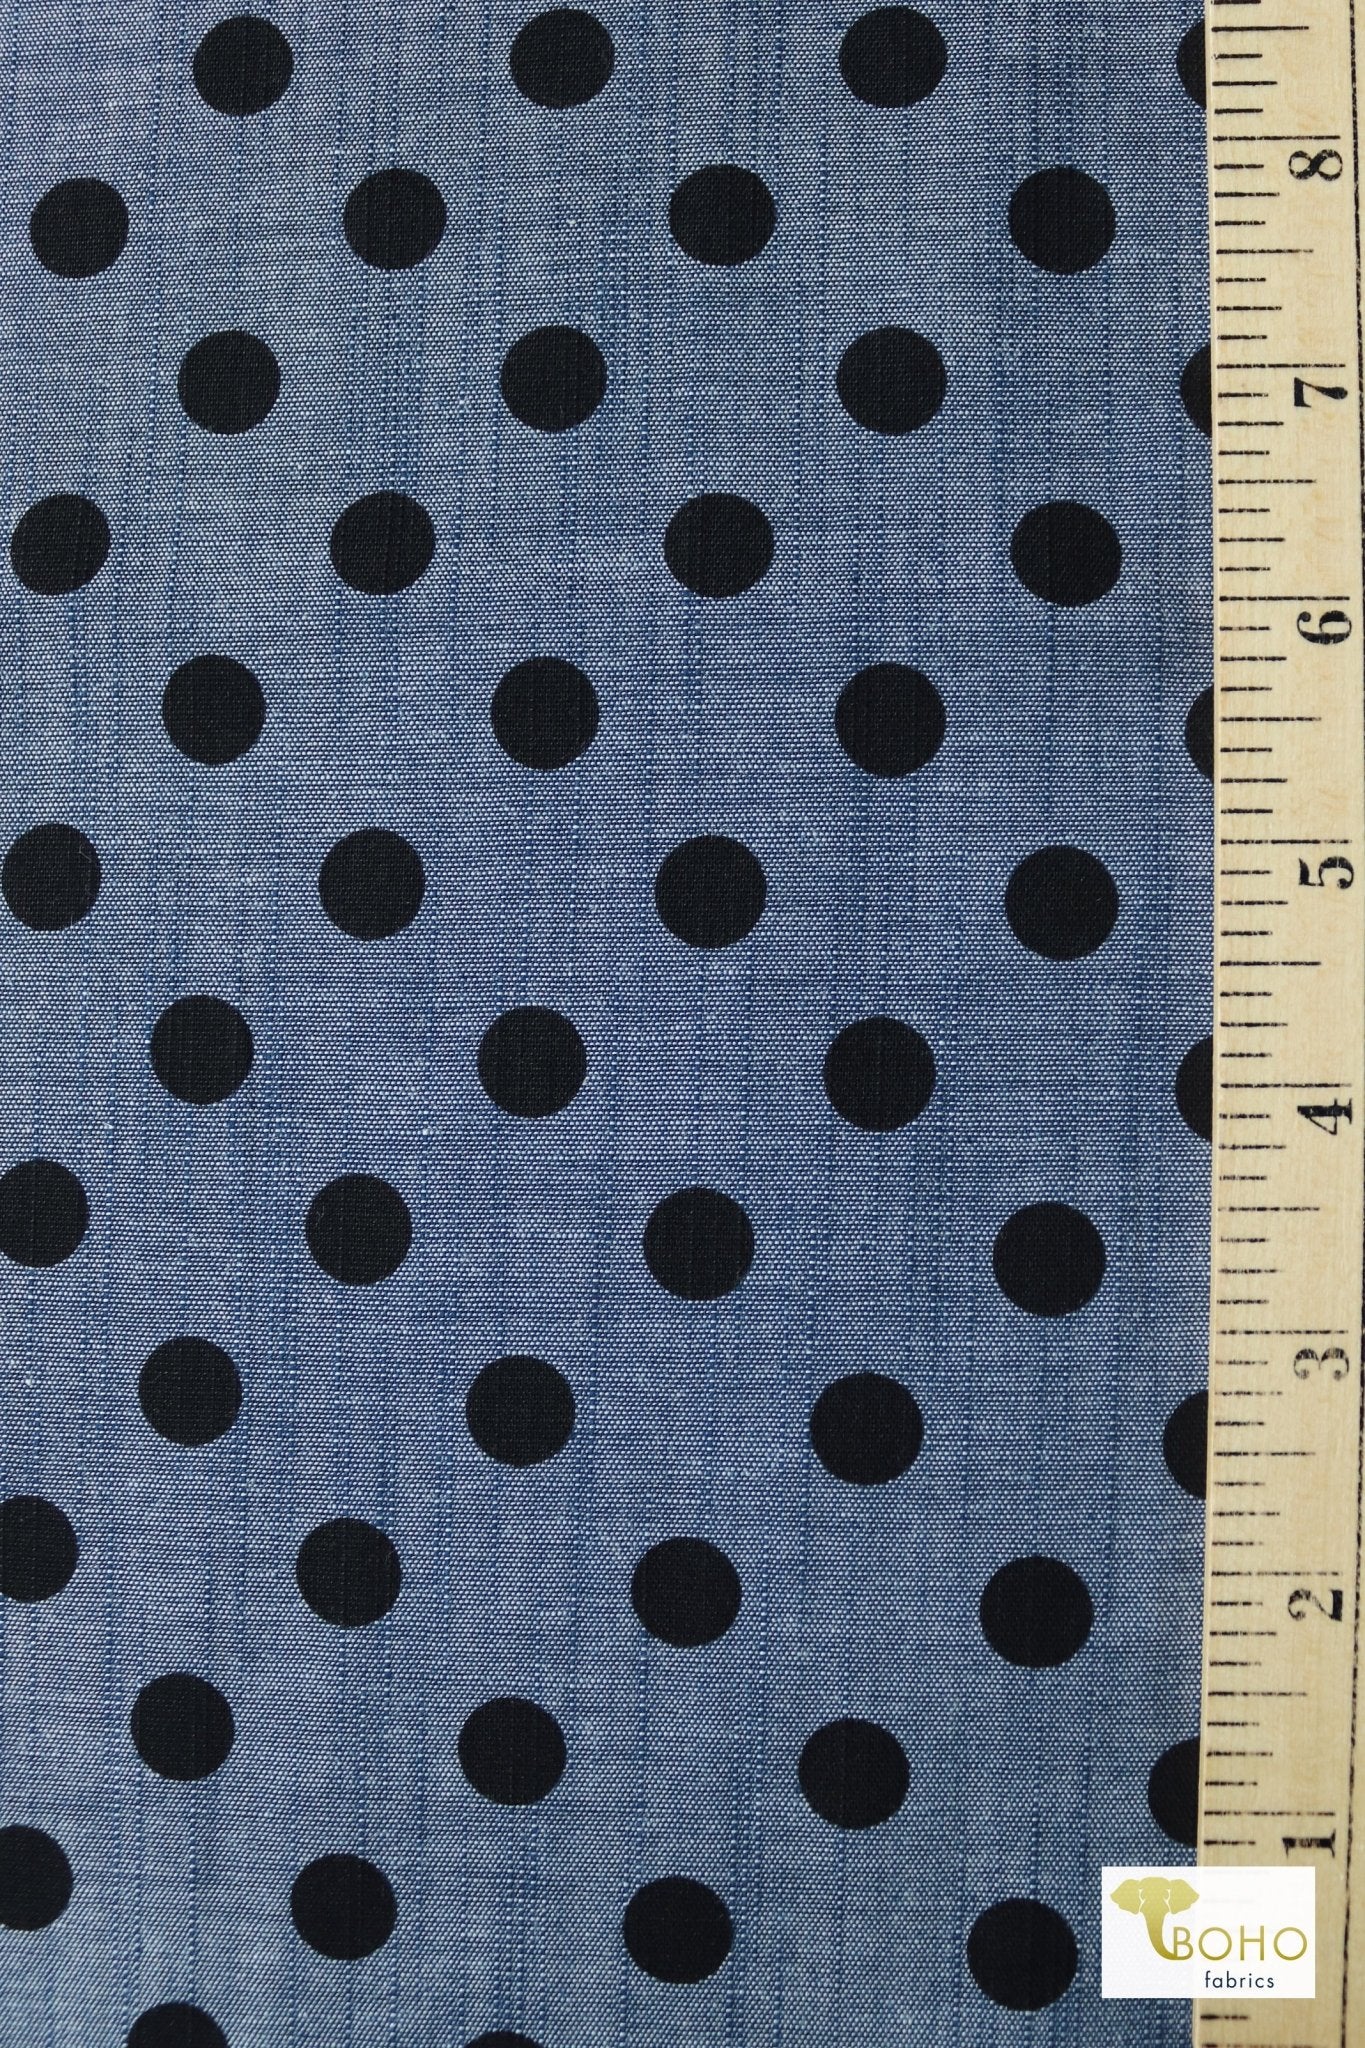 Black Polka Dots on Indigo, Cotton Chambray Woven - Boho Fabrics